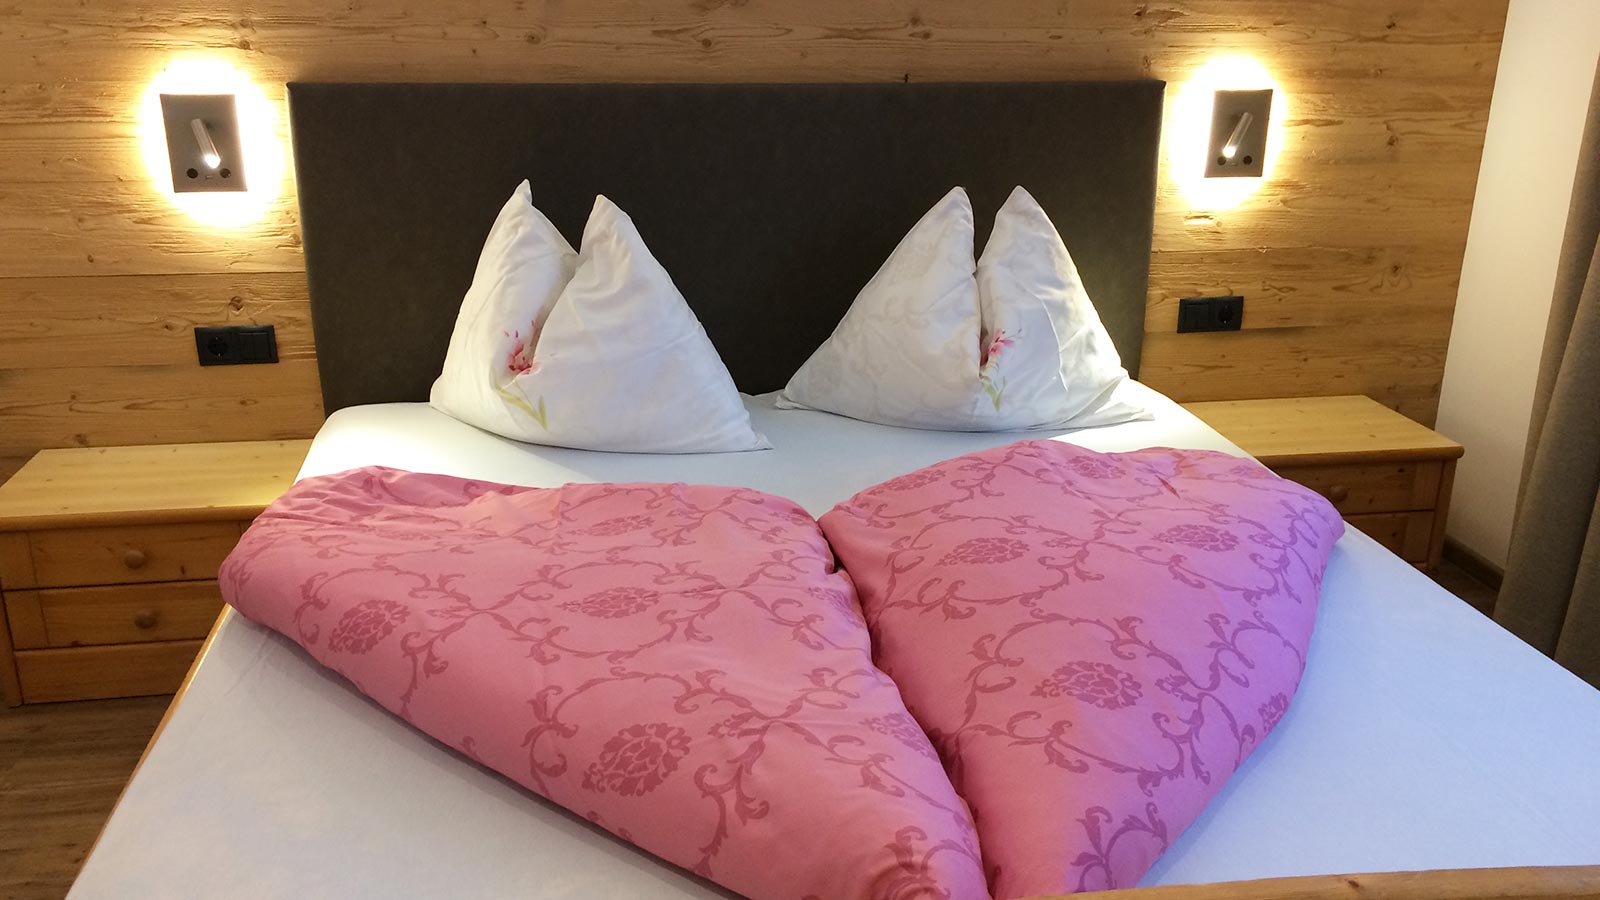 Detail eines Bettes mit rosa Bettwäsche aus einem der Schlafzimmer des Hotels Blosegg im Wipptal